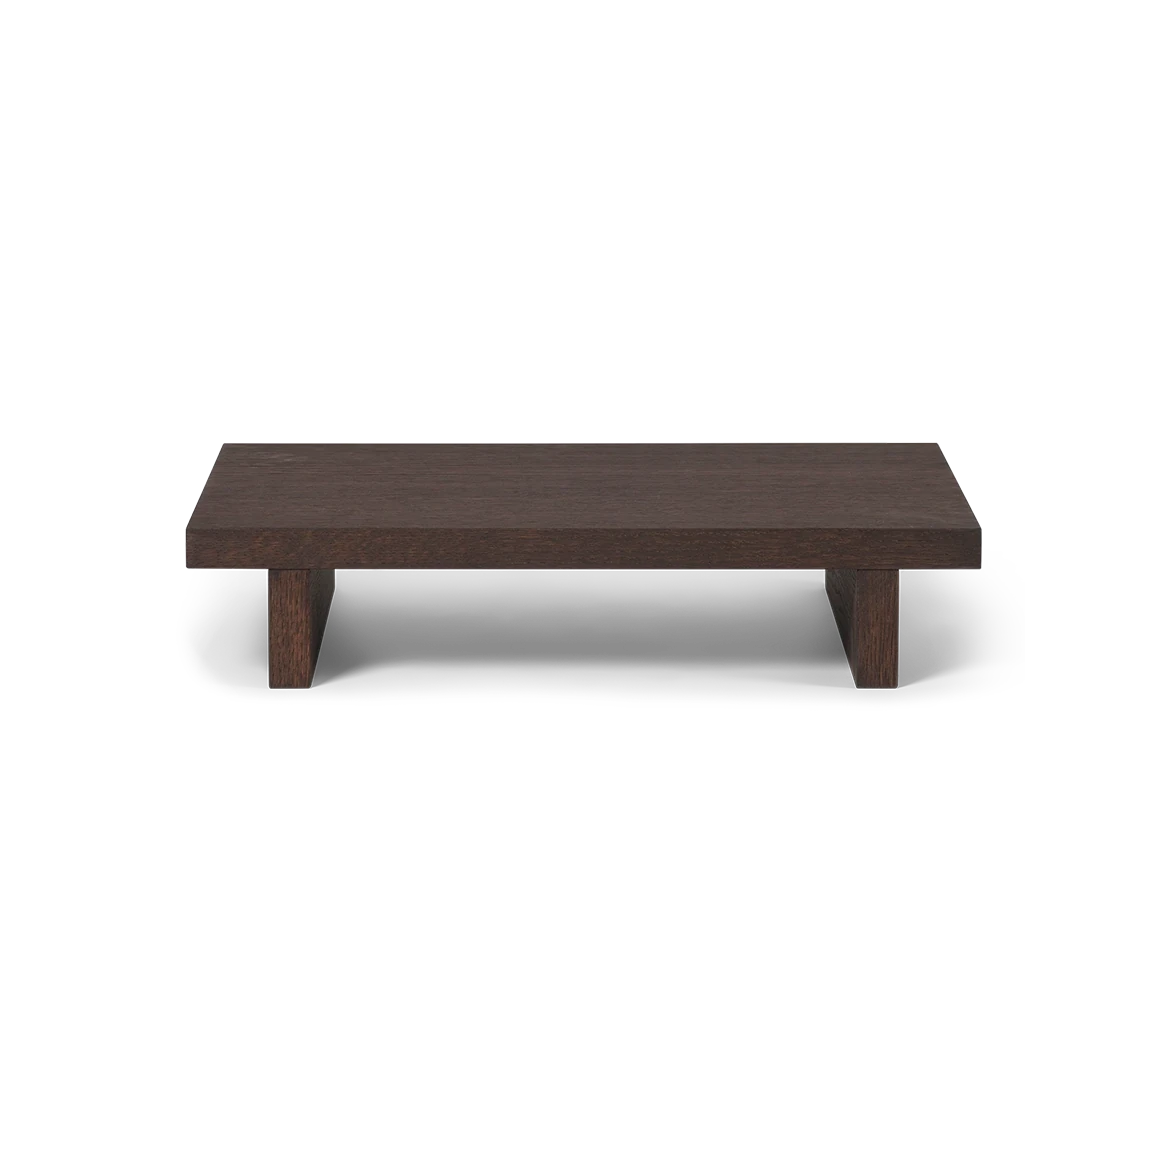 Kona Side Table | Natural Oak or Dark Stained Oak | by ferm Living